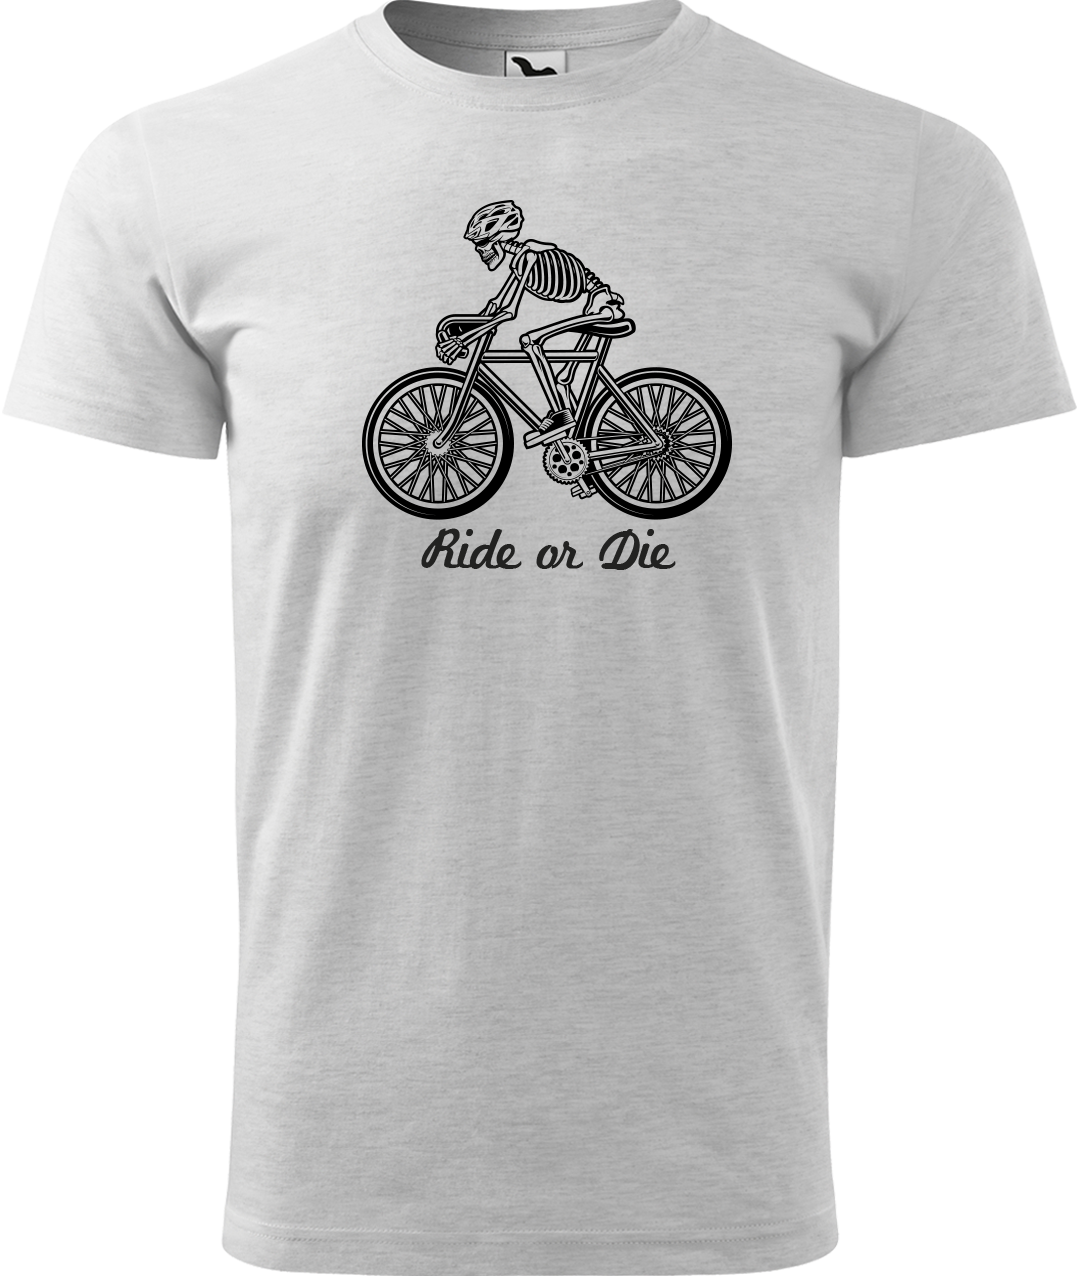 Pánské tričko pro cyklistu - Ride or Die Velikost: S, Barva: Světle šedý melír (03)